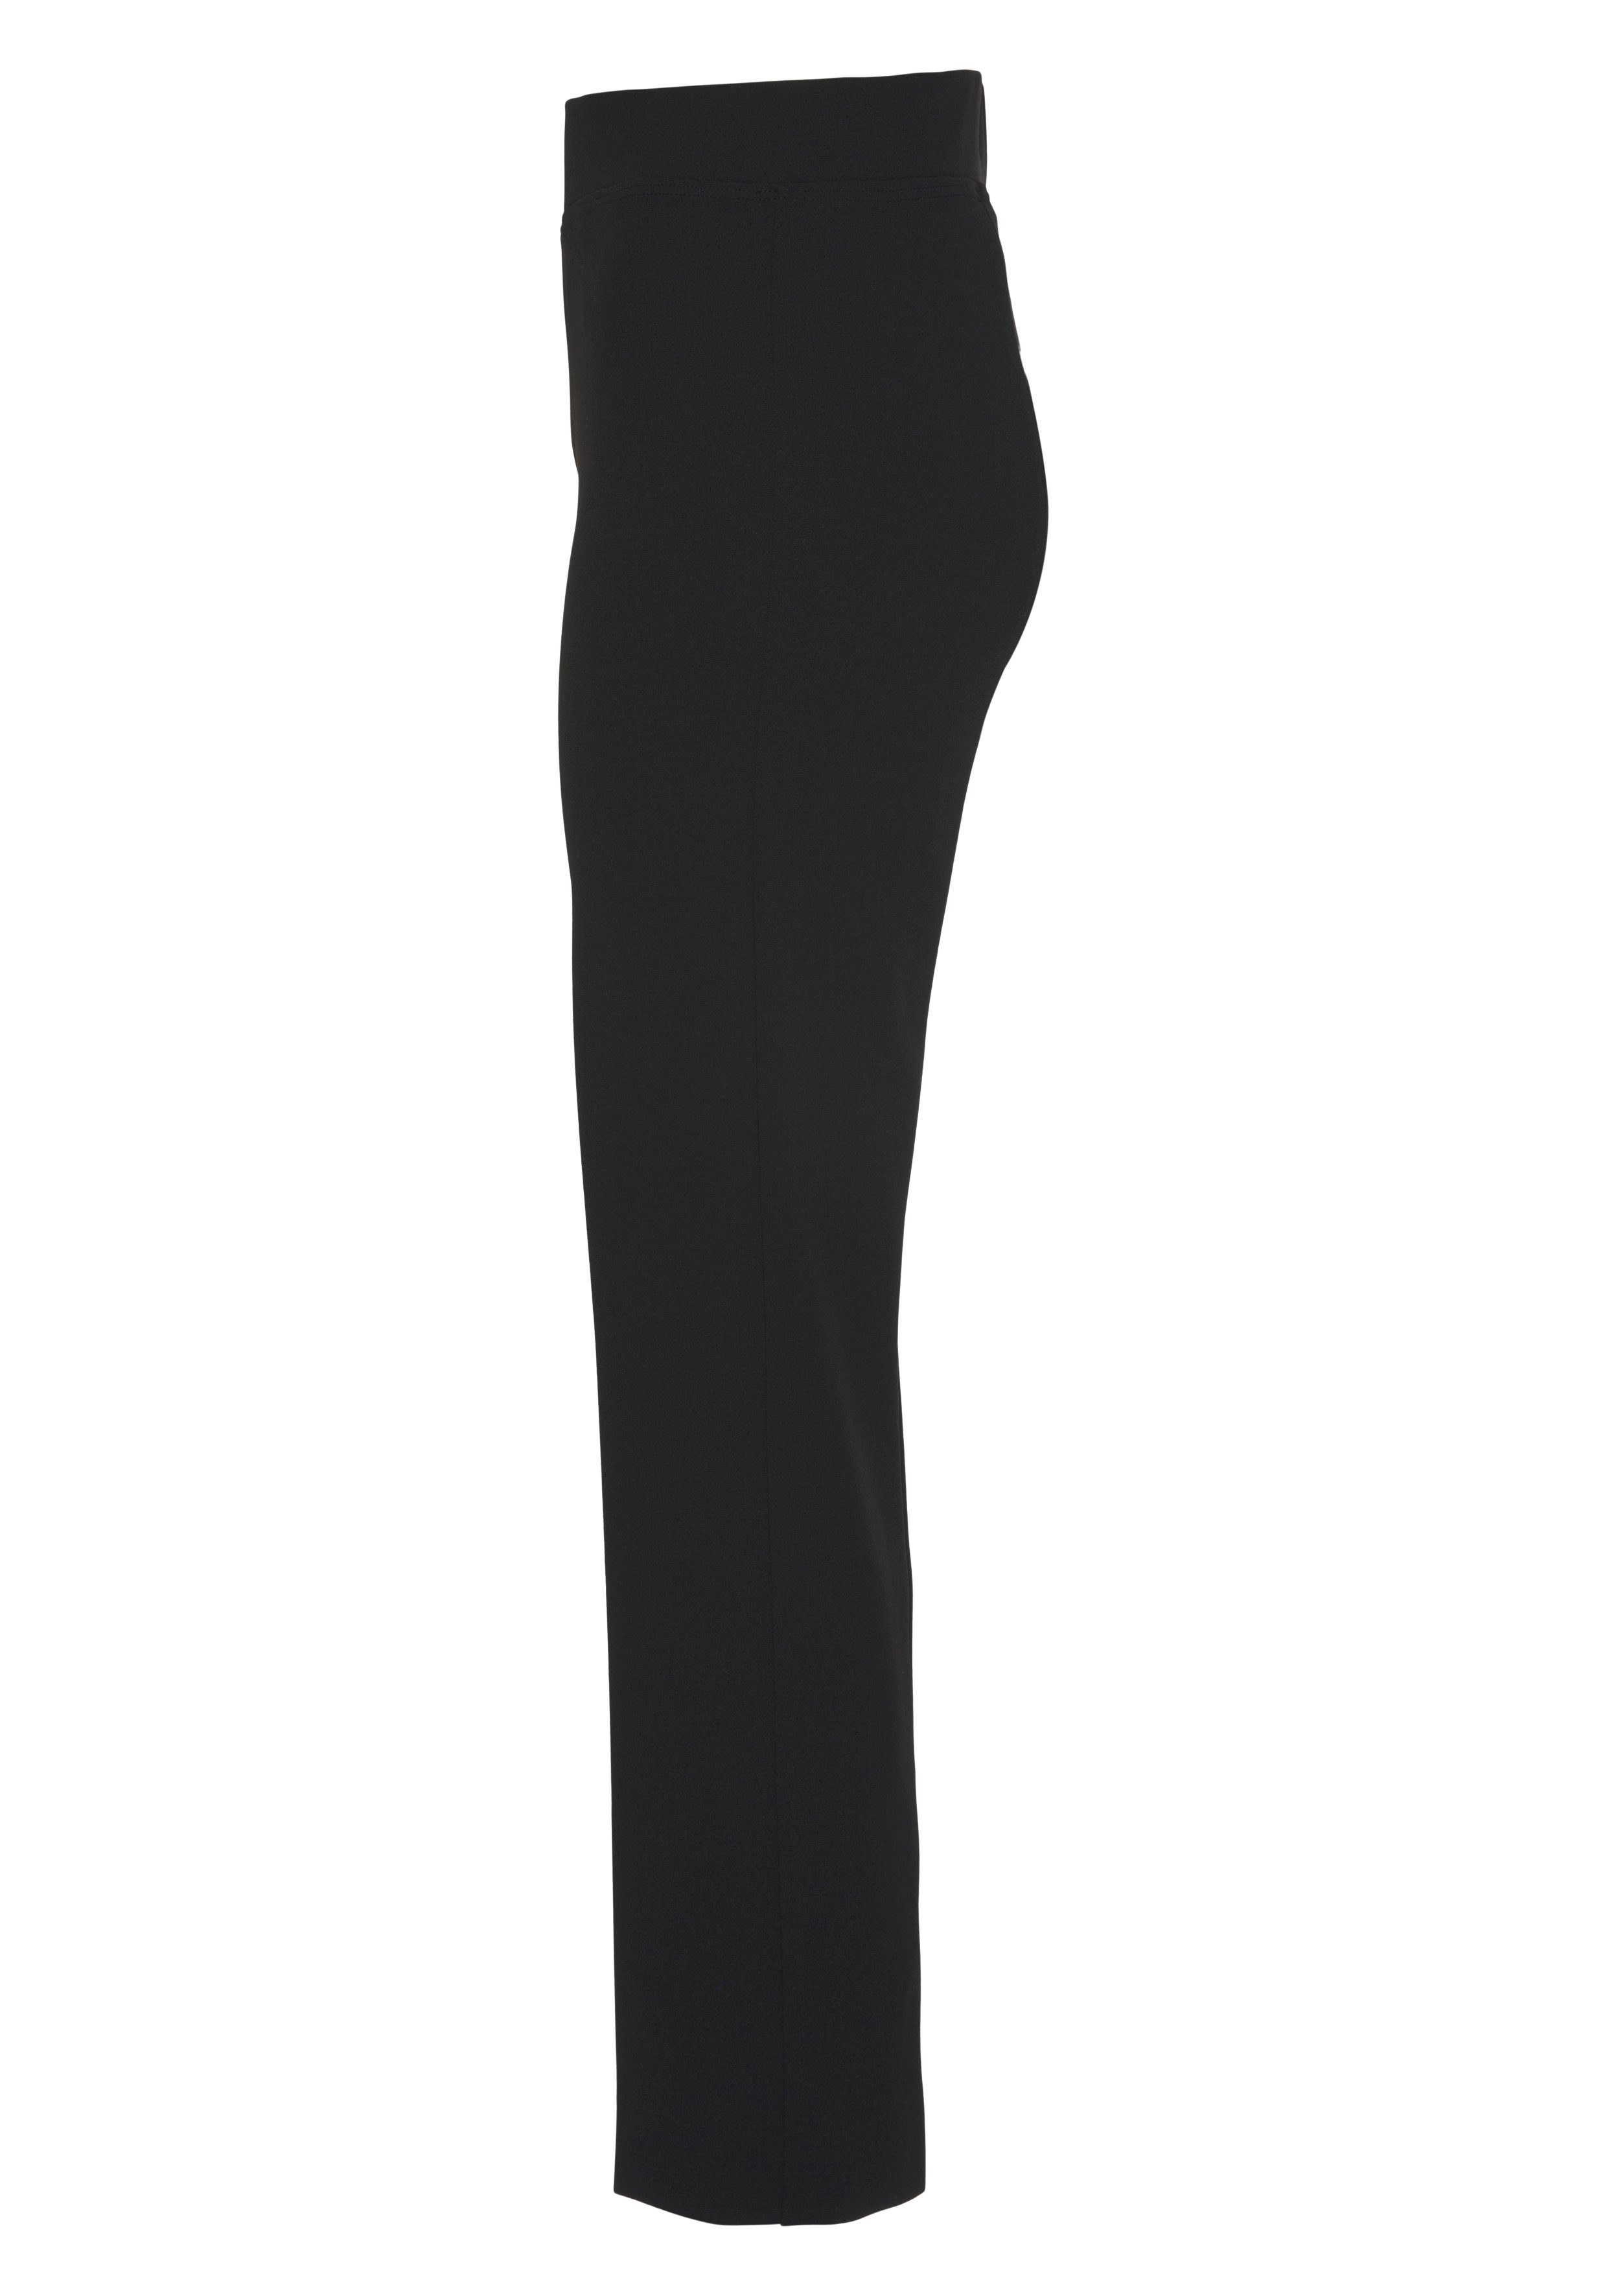 HERMANN eleganter in Collection schwarz LANGE Stretch-Hose mit Schlupfform Bügelfalte